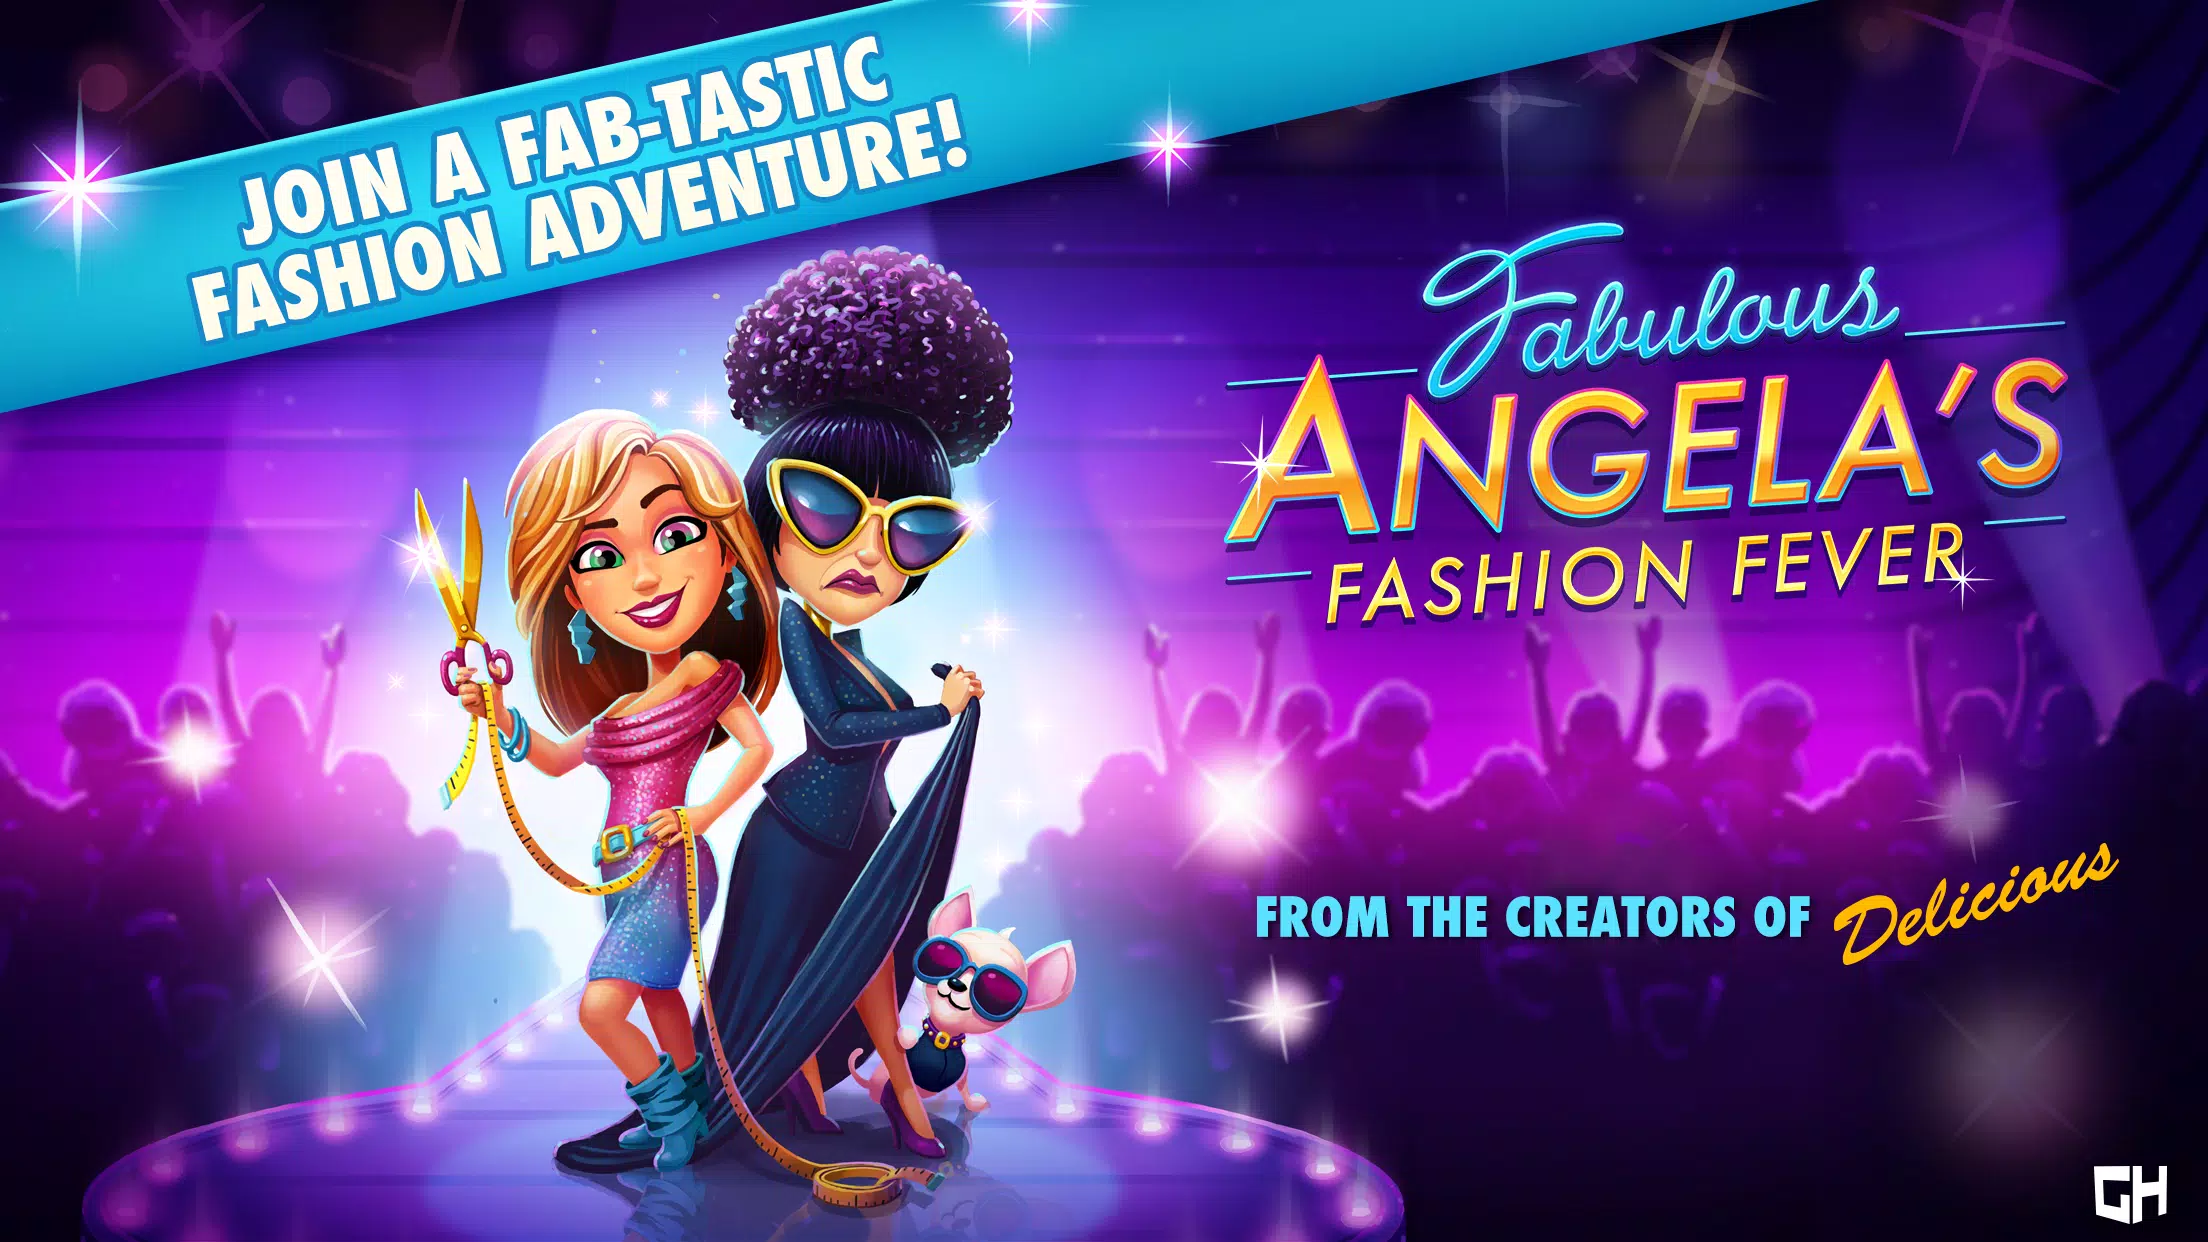 Fabulous - Sweet Revenge – Apps on Google Play